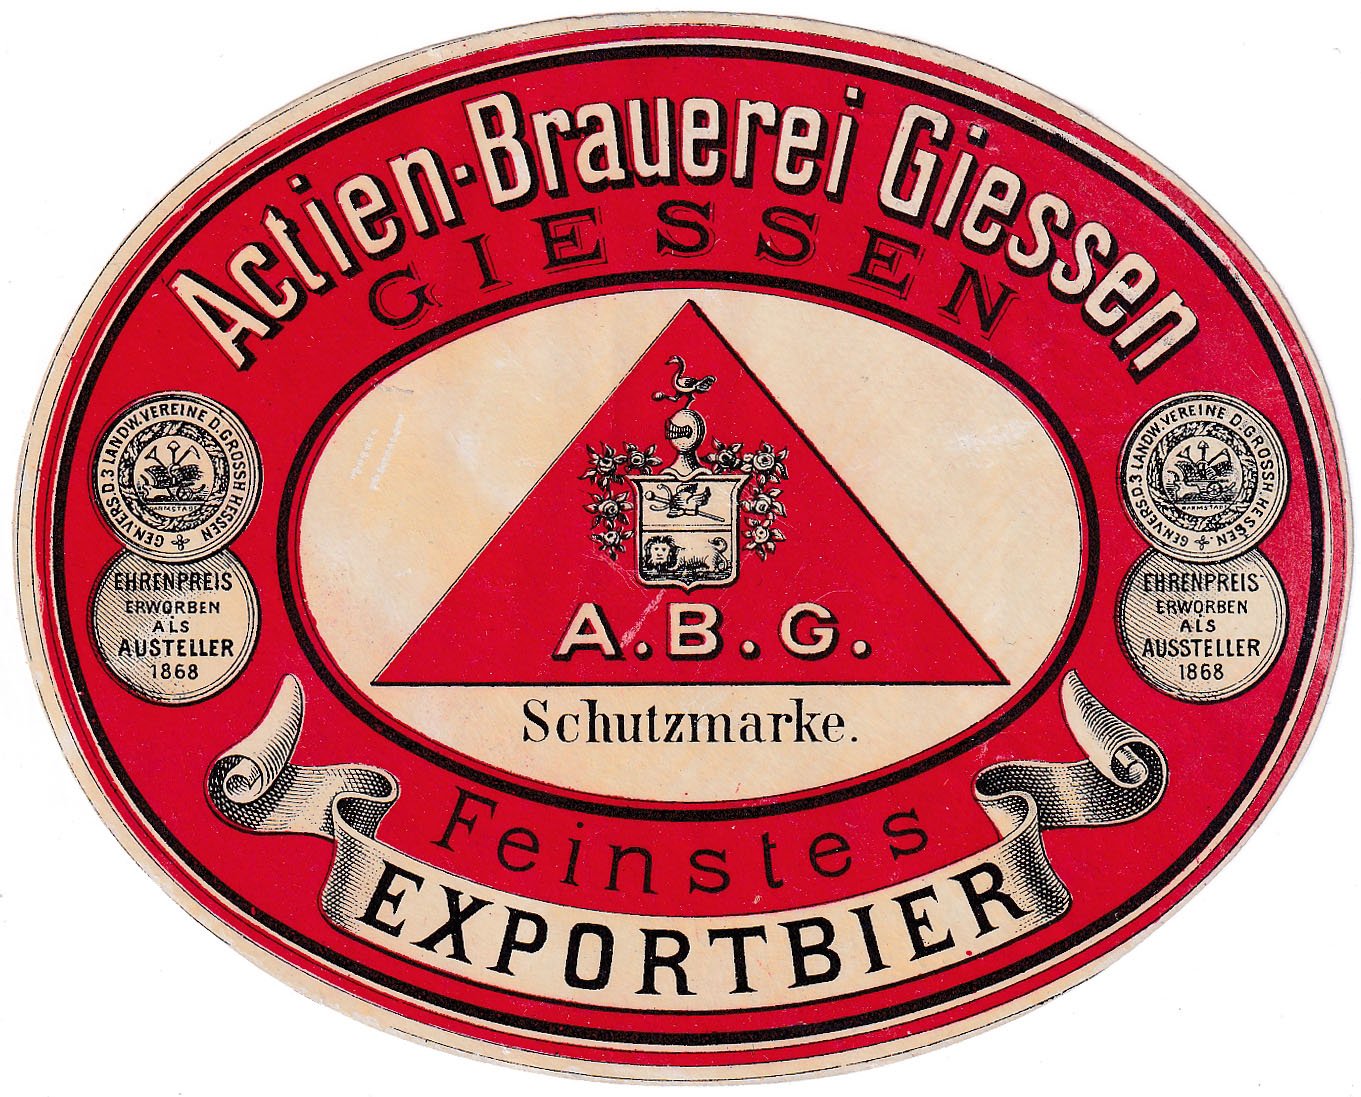 Bieretikett der Actien-Brauerei Giessen, um 1896 (ARCHIV DEUTSCHER BIERETIKETTEN CC BY-NC-SA)